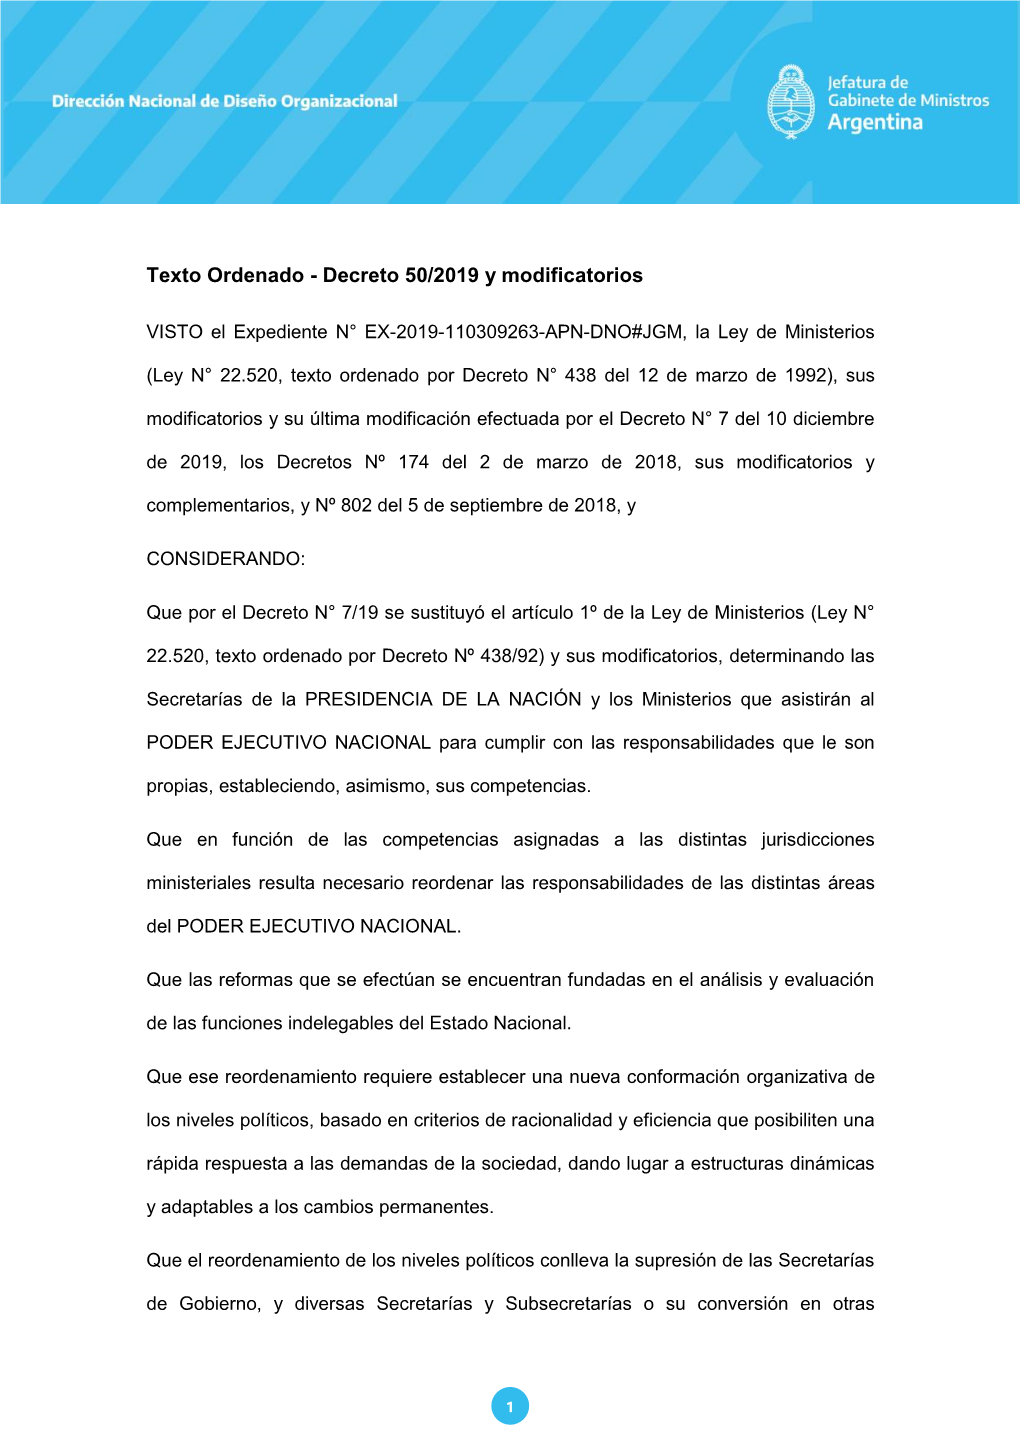 Texto Ordenado - Decreto 50/2019 Y Modificatorios